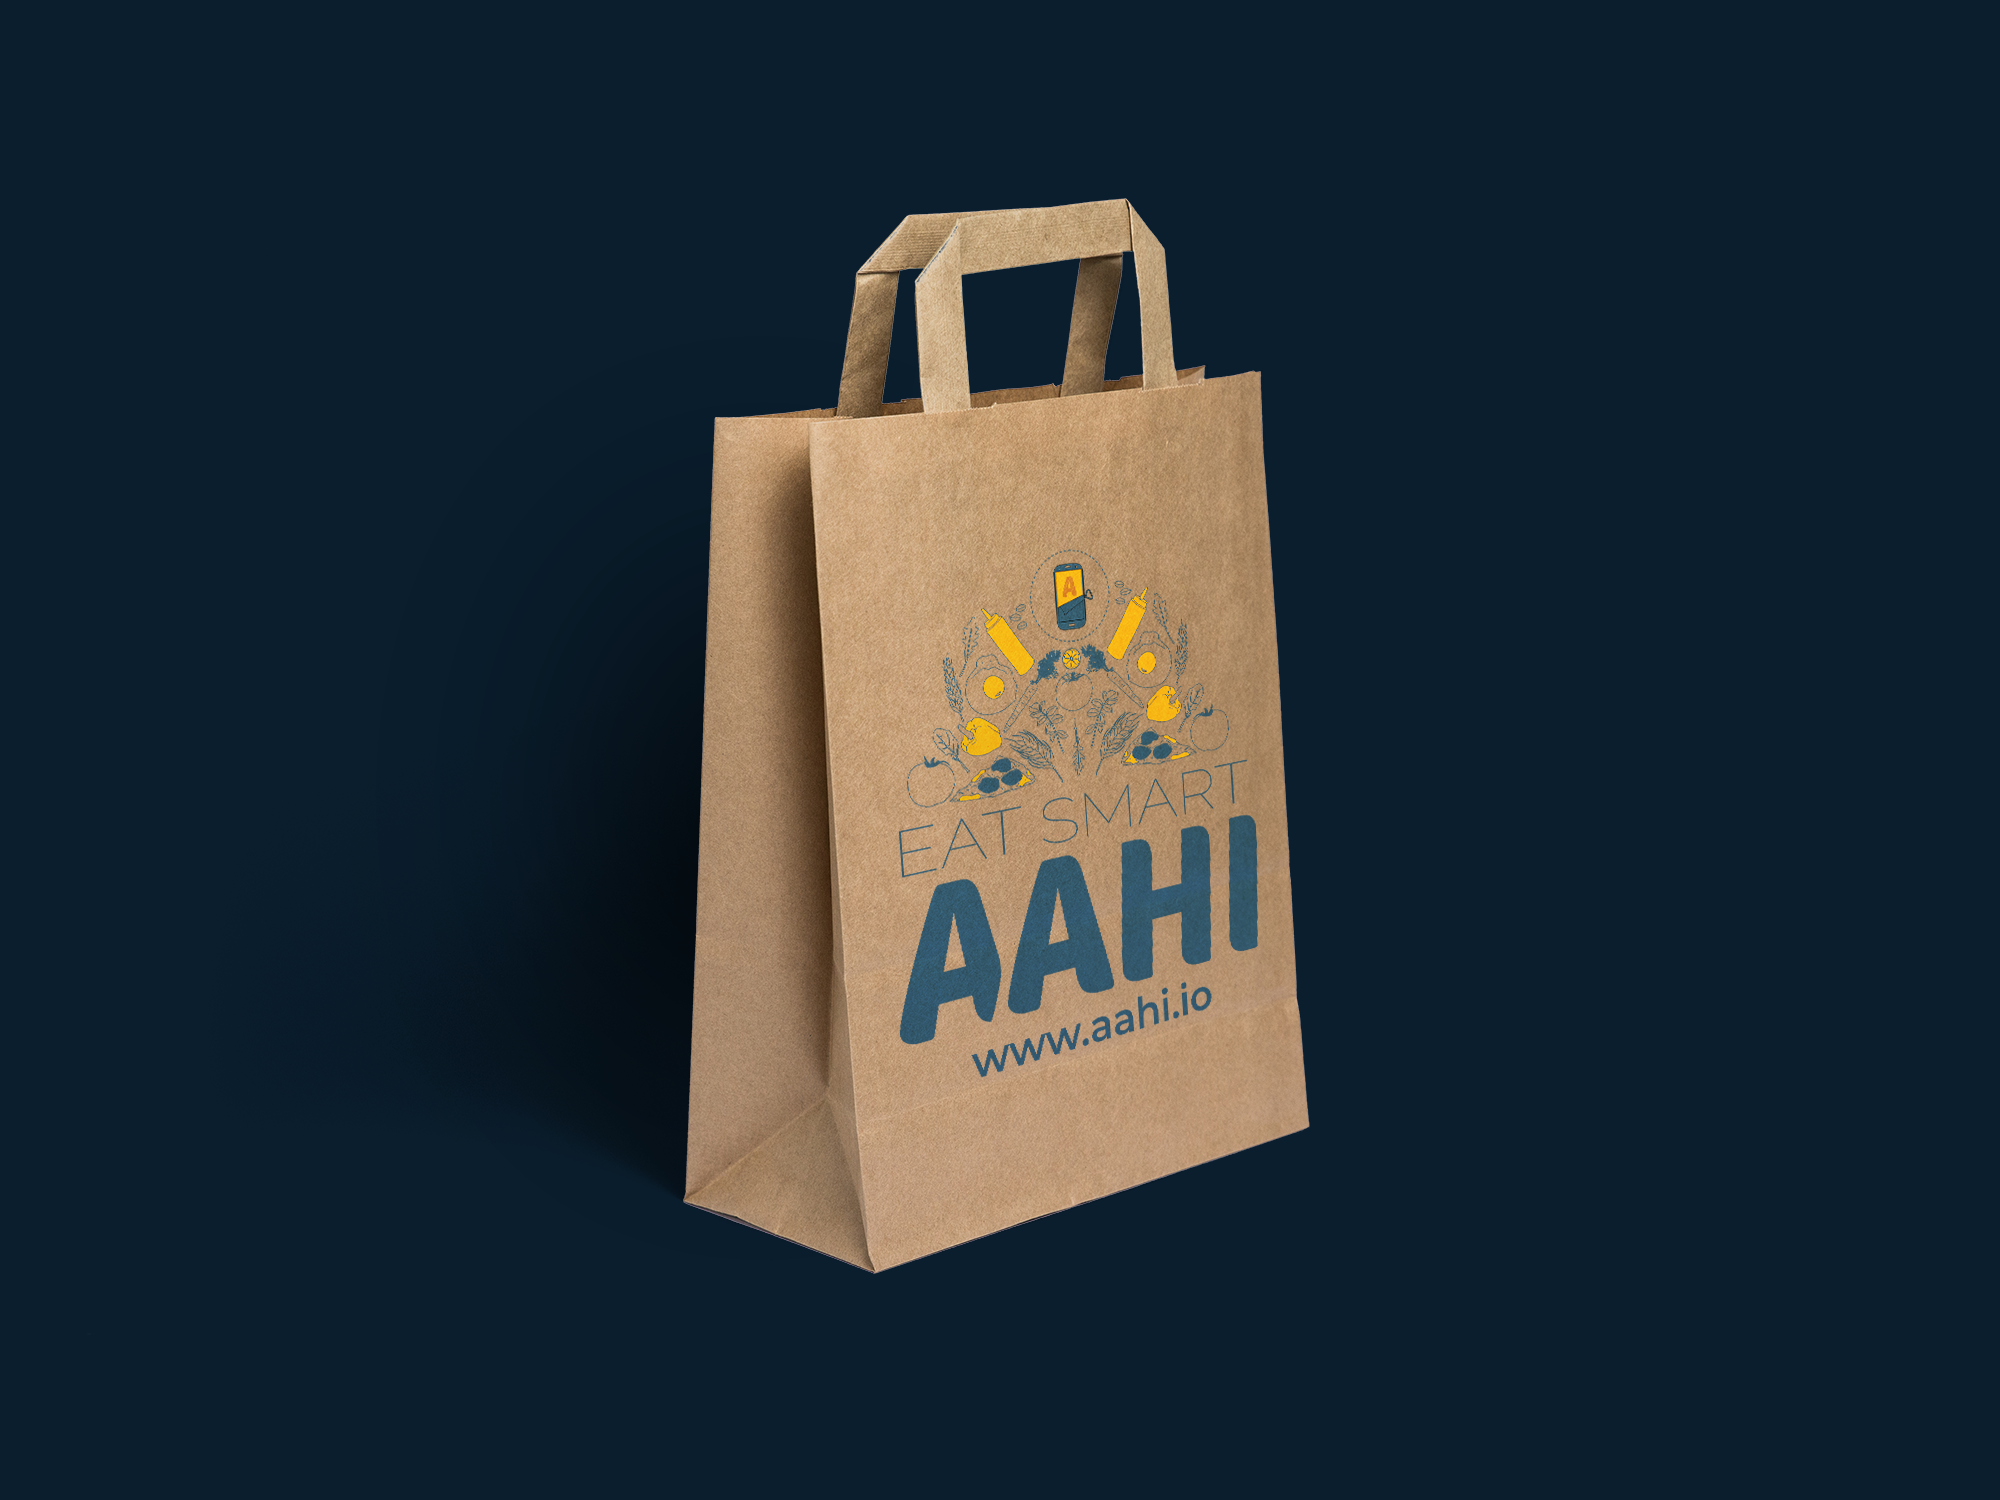 aahi app design, branding, bags, food app